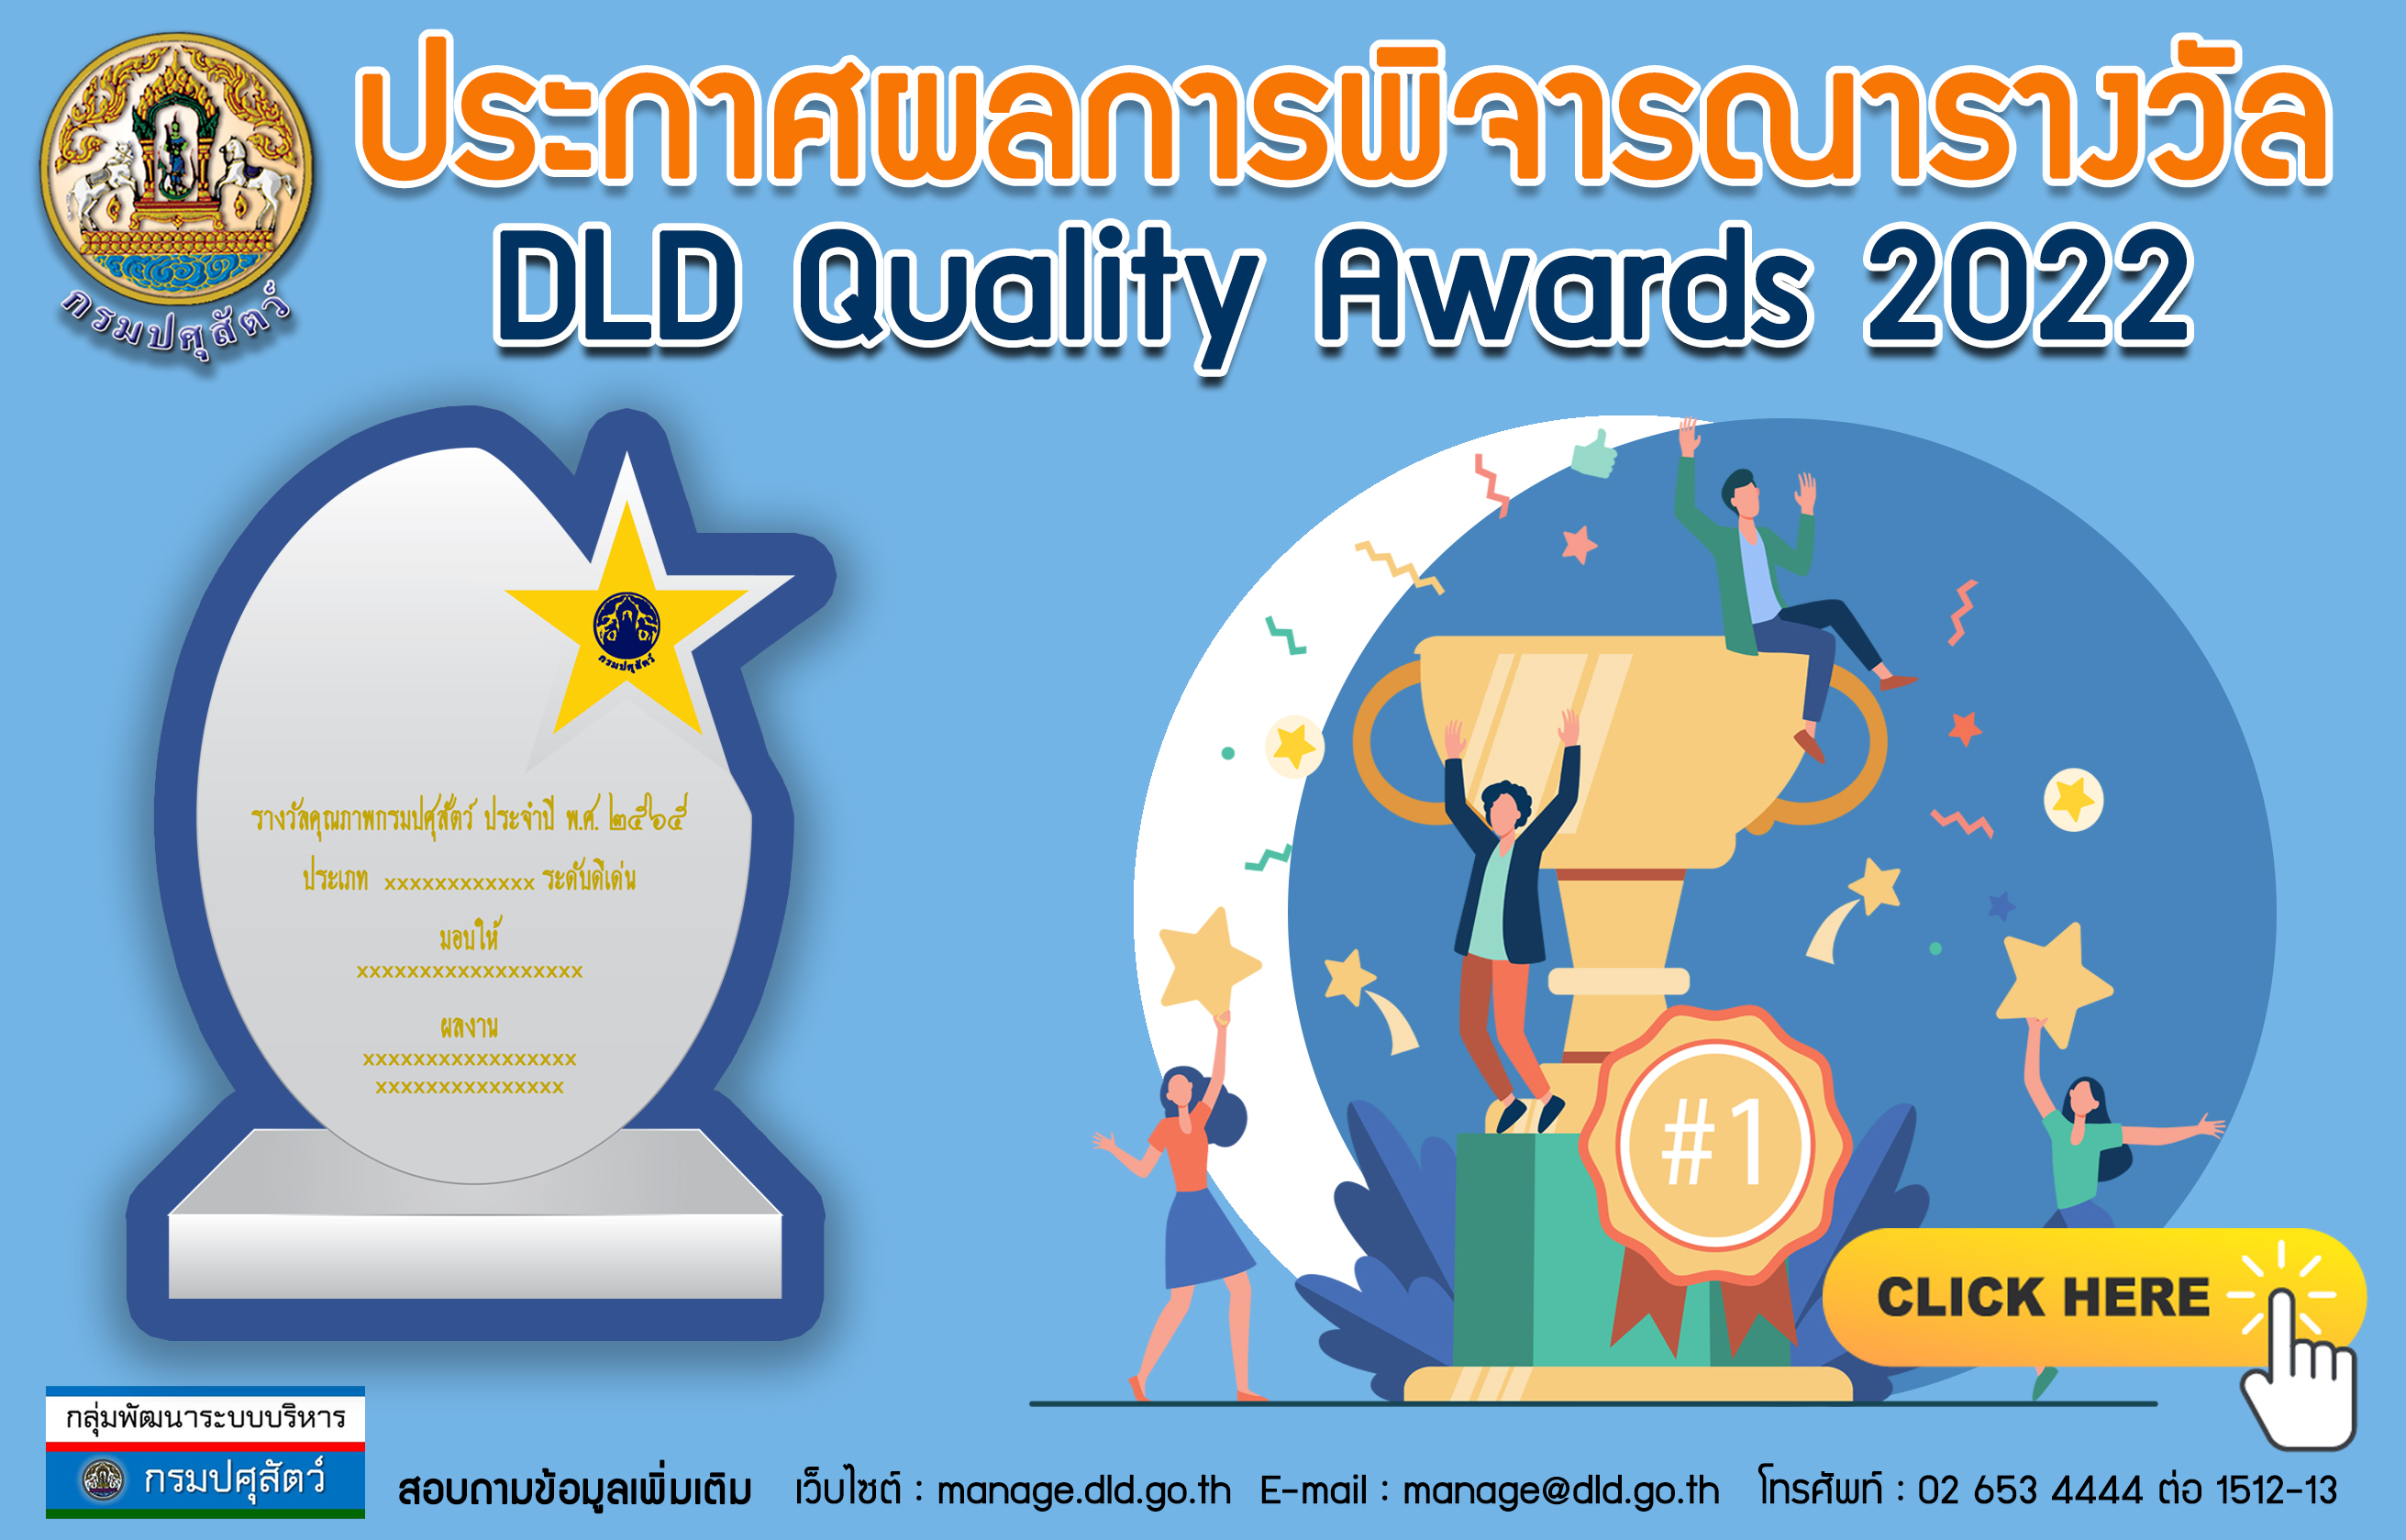 ประกาศผลการพิจารณารางวัลคุณภาพกรมปศุสัตว์ ประจำปี พ.ศ.2565 (DLD Quality Award 2022)